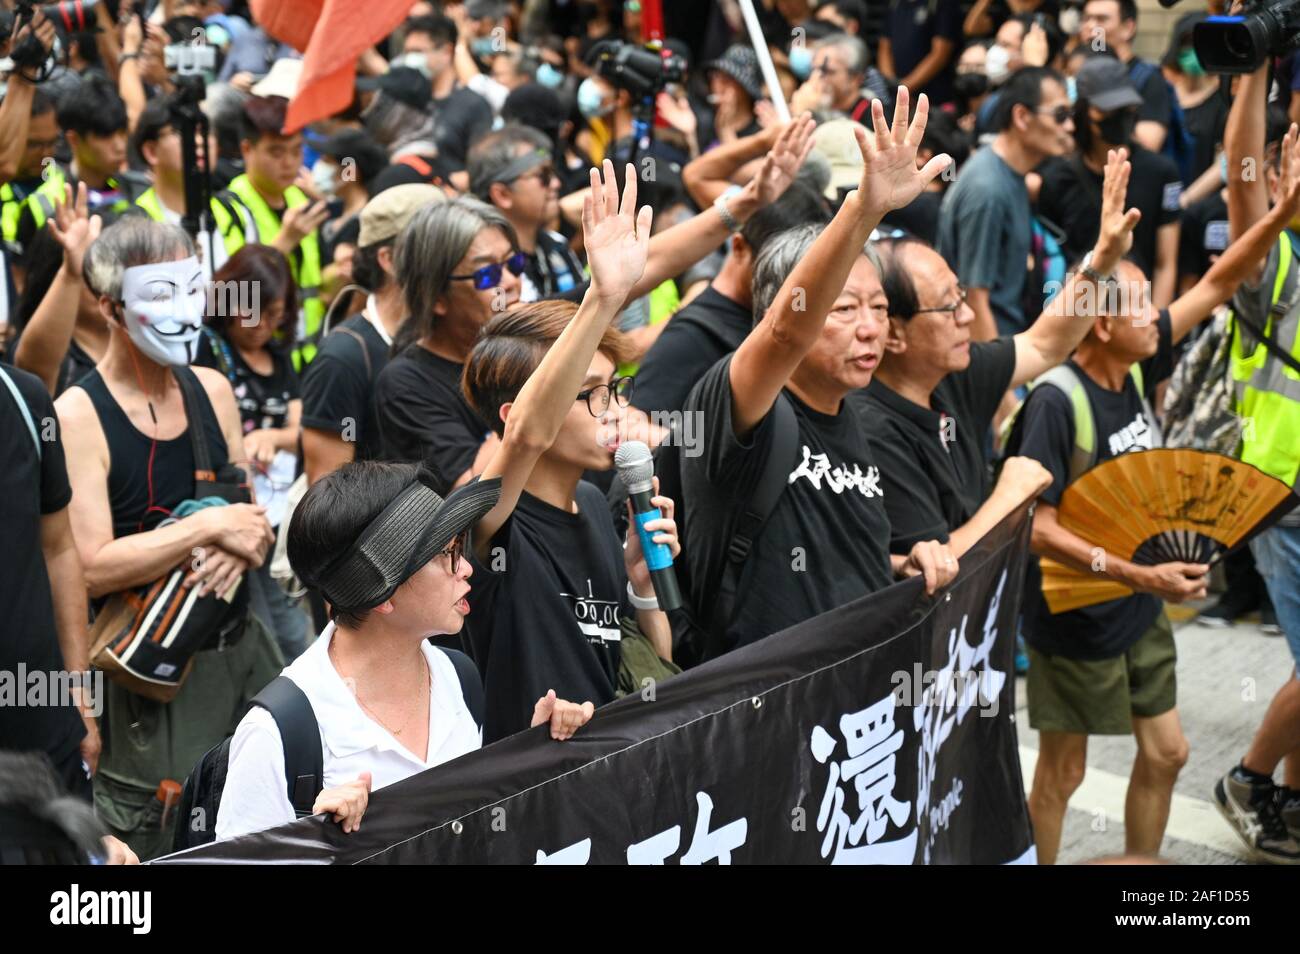 Hongkong, China. 12 Dez, 2019. Ehemalige Politiker Lee Cheuk-yan und andere Politiker und Aktivisten halten bis fünf Finger die fünf Forderungen der Protestbewegung in Hongkong am 1. Oktober 2019 zu bedeuten. Foto von Thomas Maresca/UPI Quelle: UPI/Alamy leben Nachrichten Stockfoto